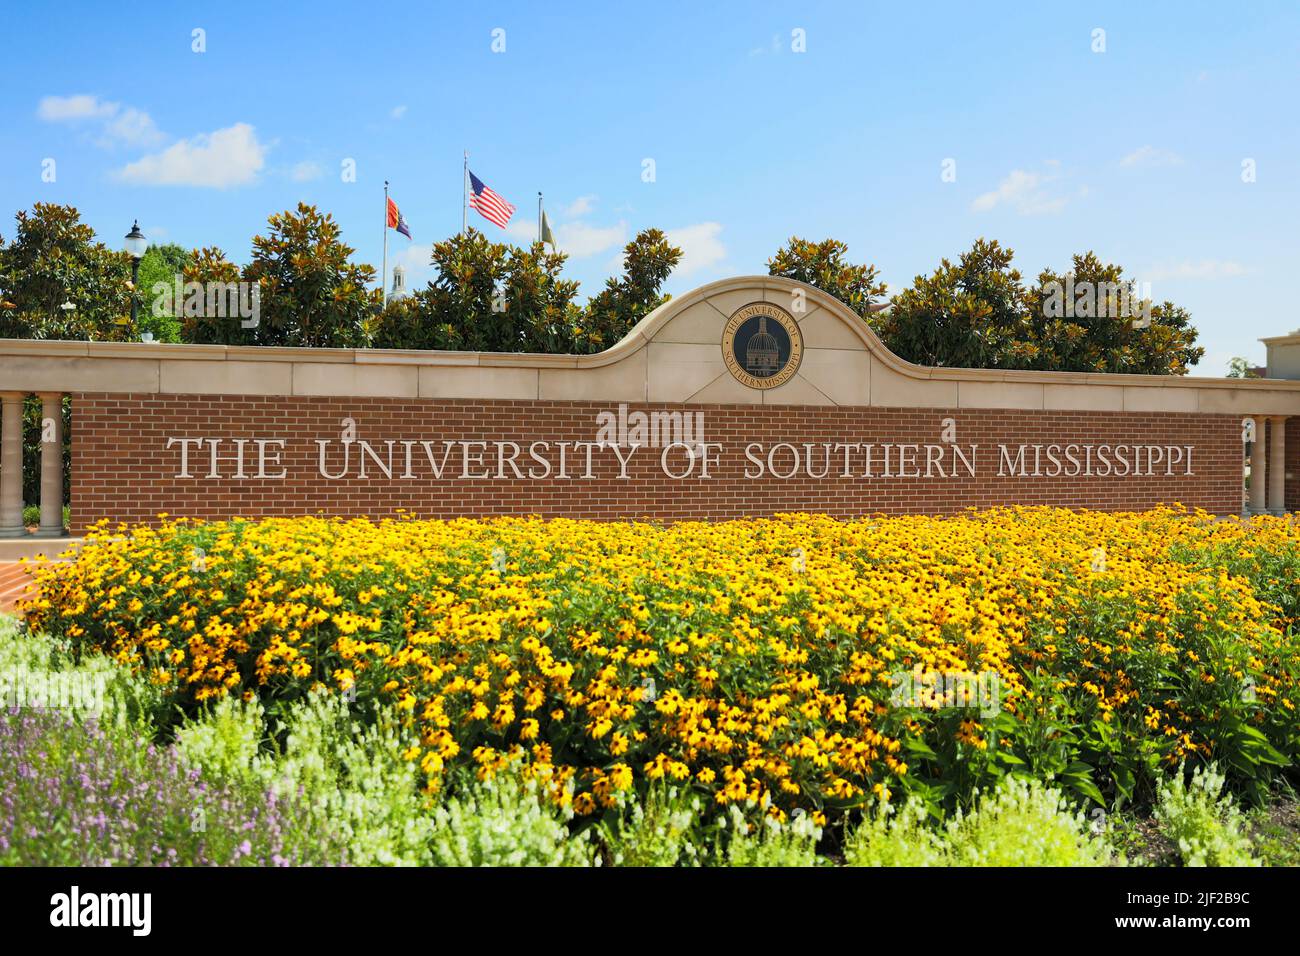 Hattiesburg, MS - 12 juin 2022 : panneau d'entrée de l'université du Mississippi du Sud Banque D'Images